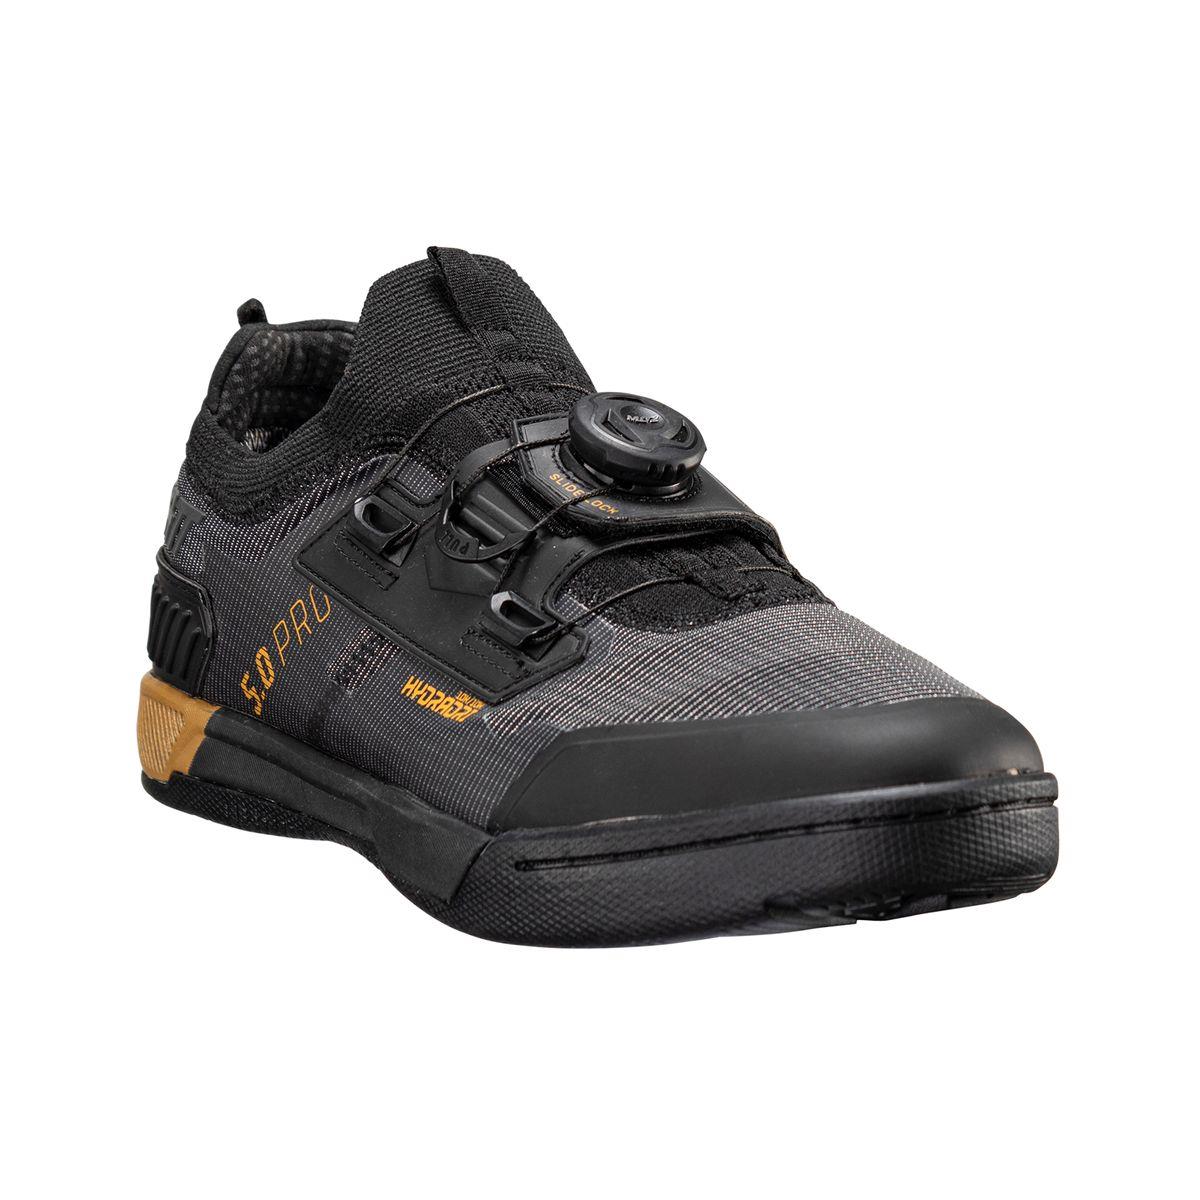 Chaussures VTT imperméables HydraDri ProClip 5.0 noir taille 44.5